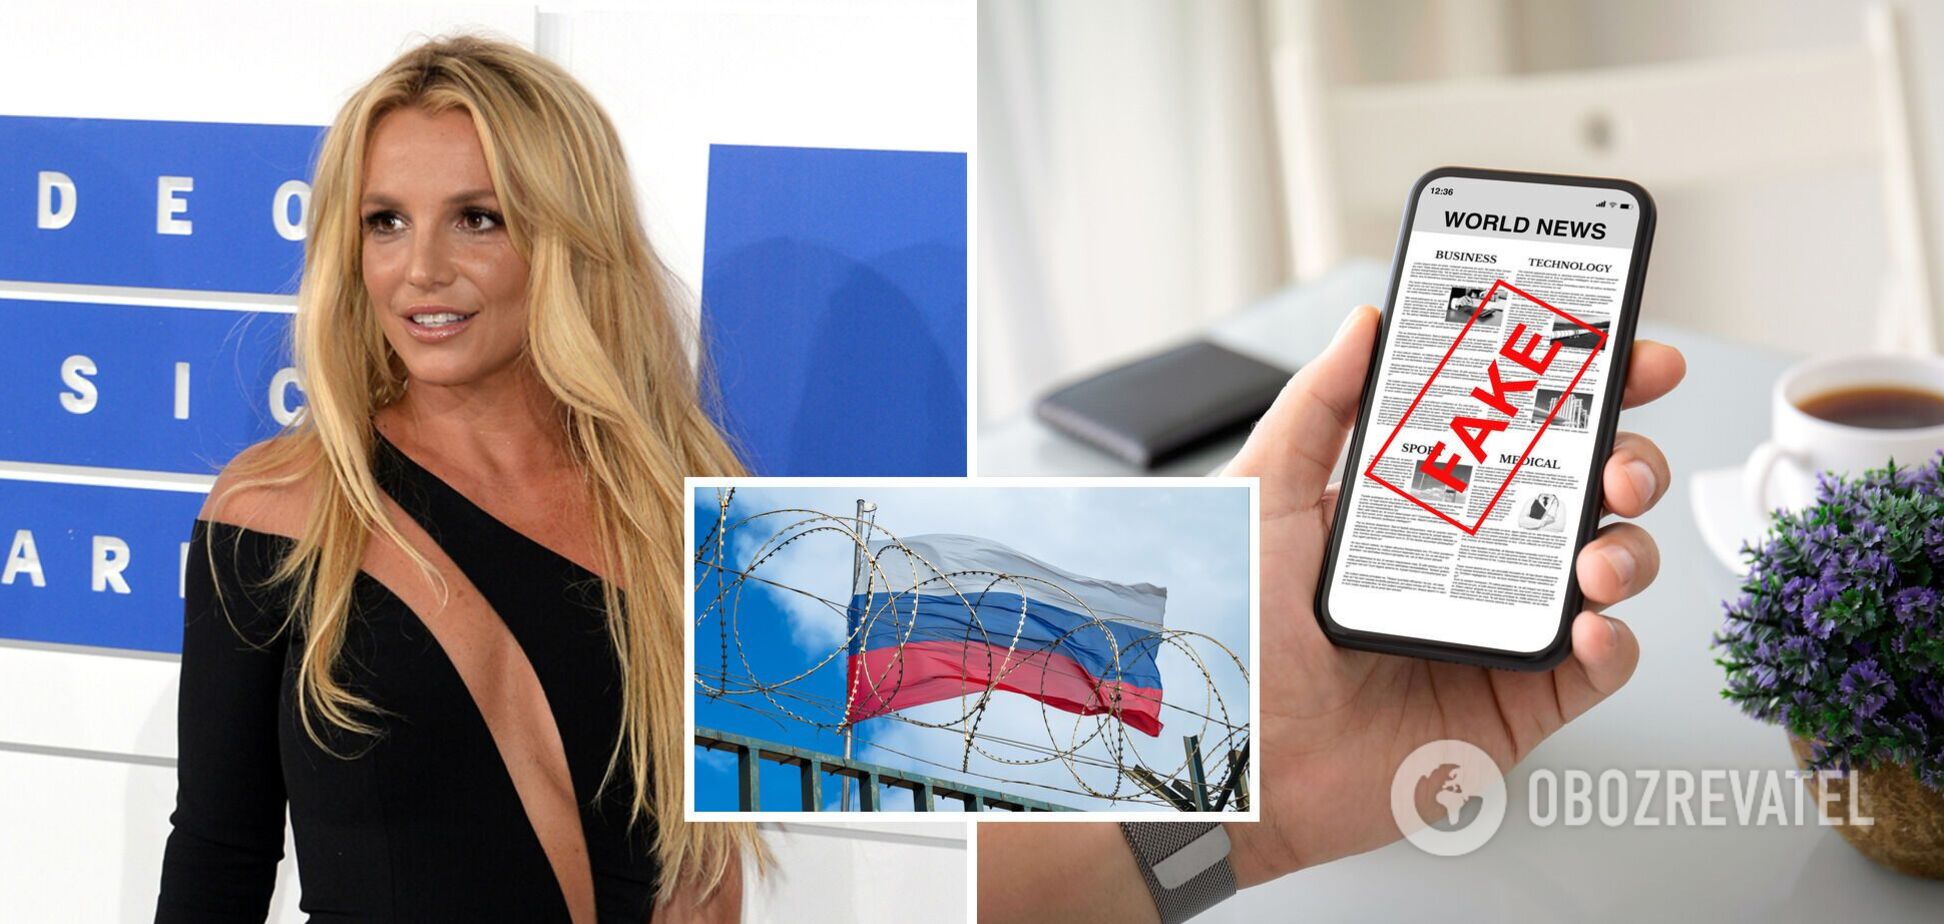 РосСМИ запустили фейк о том, что Бритни Спирс поддержала Россию, поэтому ее заблокировали в Instagram: почему это неправда